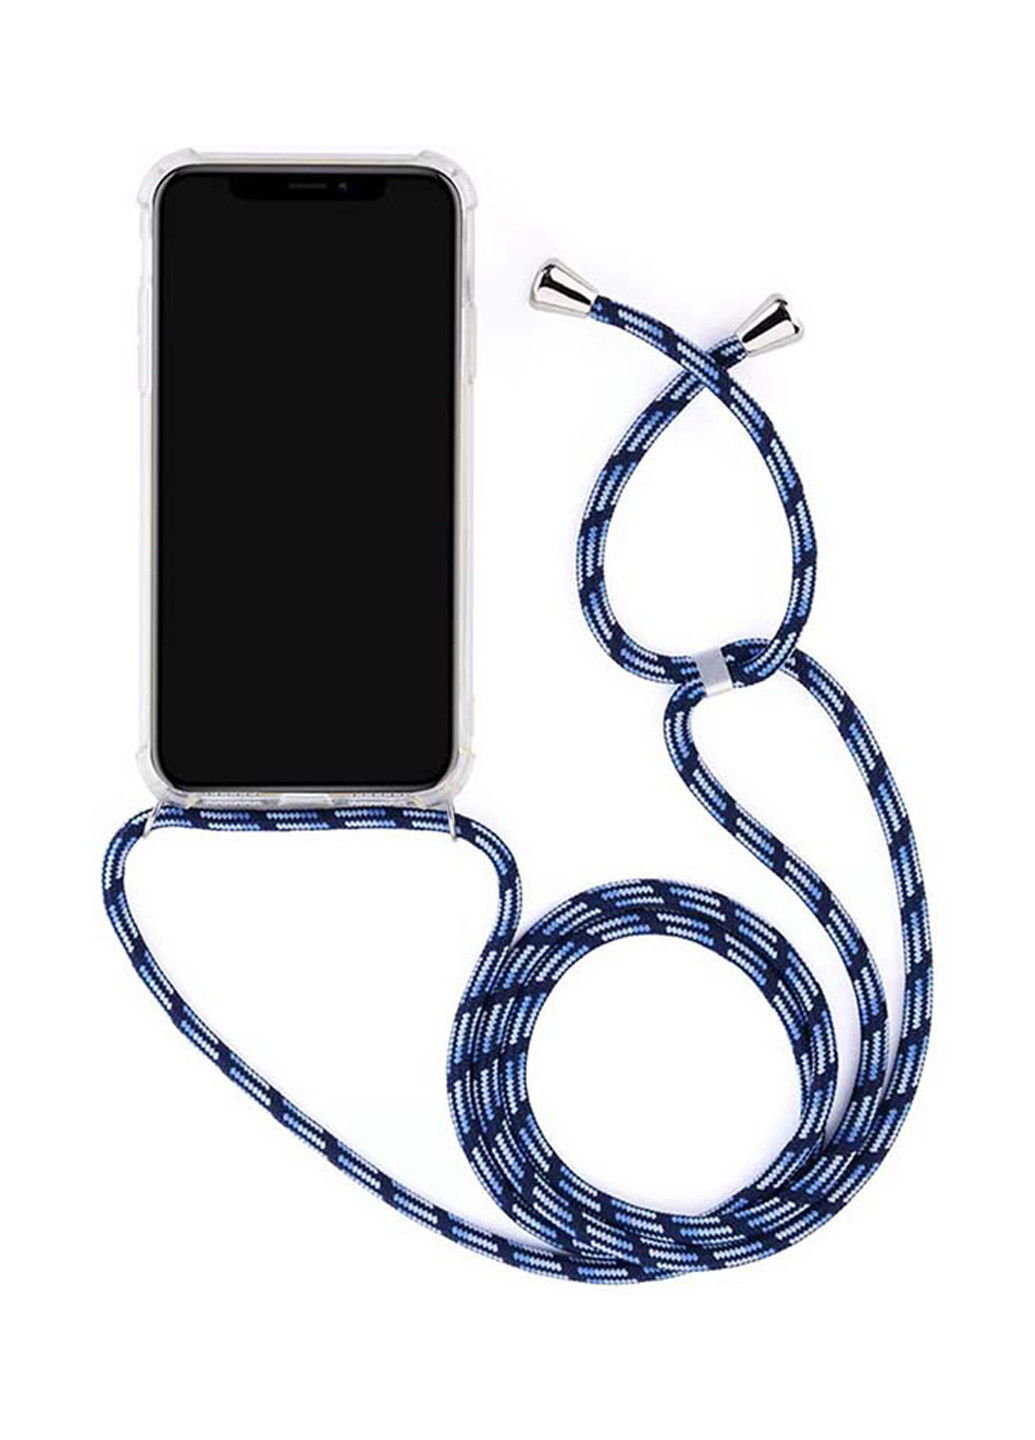 Силиконовый чехол Strap для Samsung Galaxy A30s/A50/A50s 2019 SM-A307/SM-A505/SM-A507 Deep Blue (704263) BeCover strap для samsung galaxy a30s/a50/a50s 2019 sm-a307/sm-a505/sm-a507 deep blue (704263) (154454101)